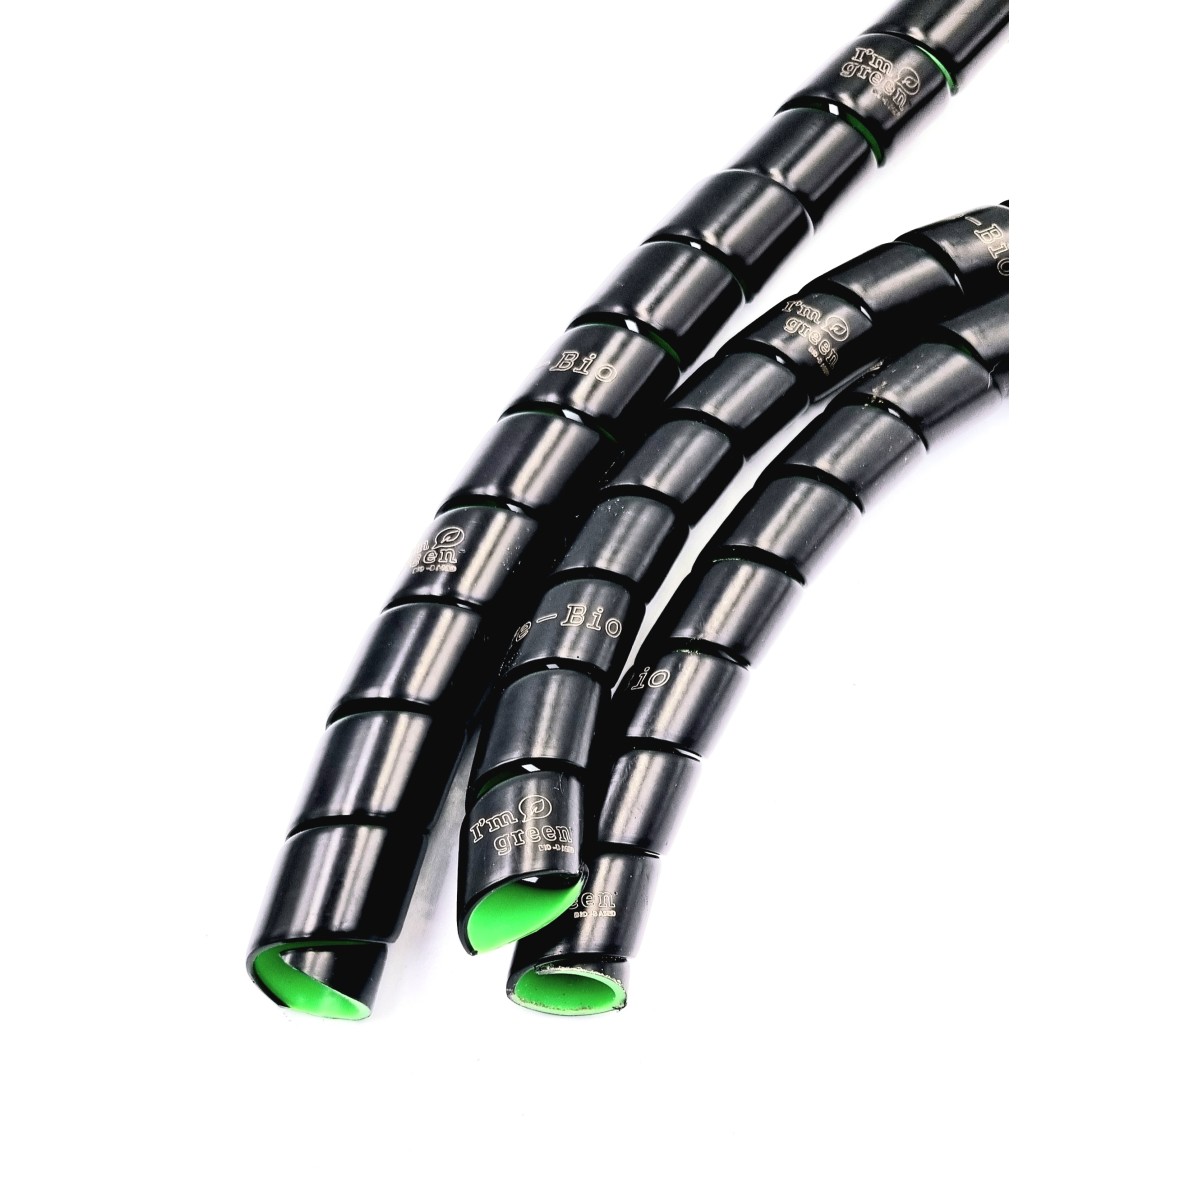 Gaine spirale noire Universelle pour cables moto.